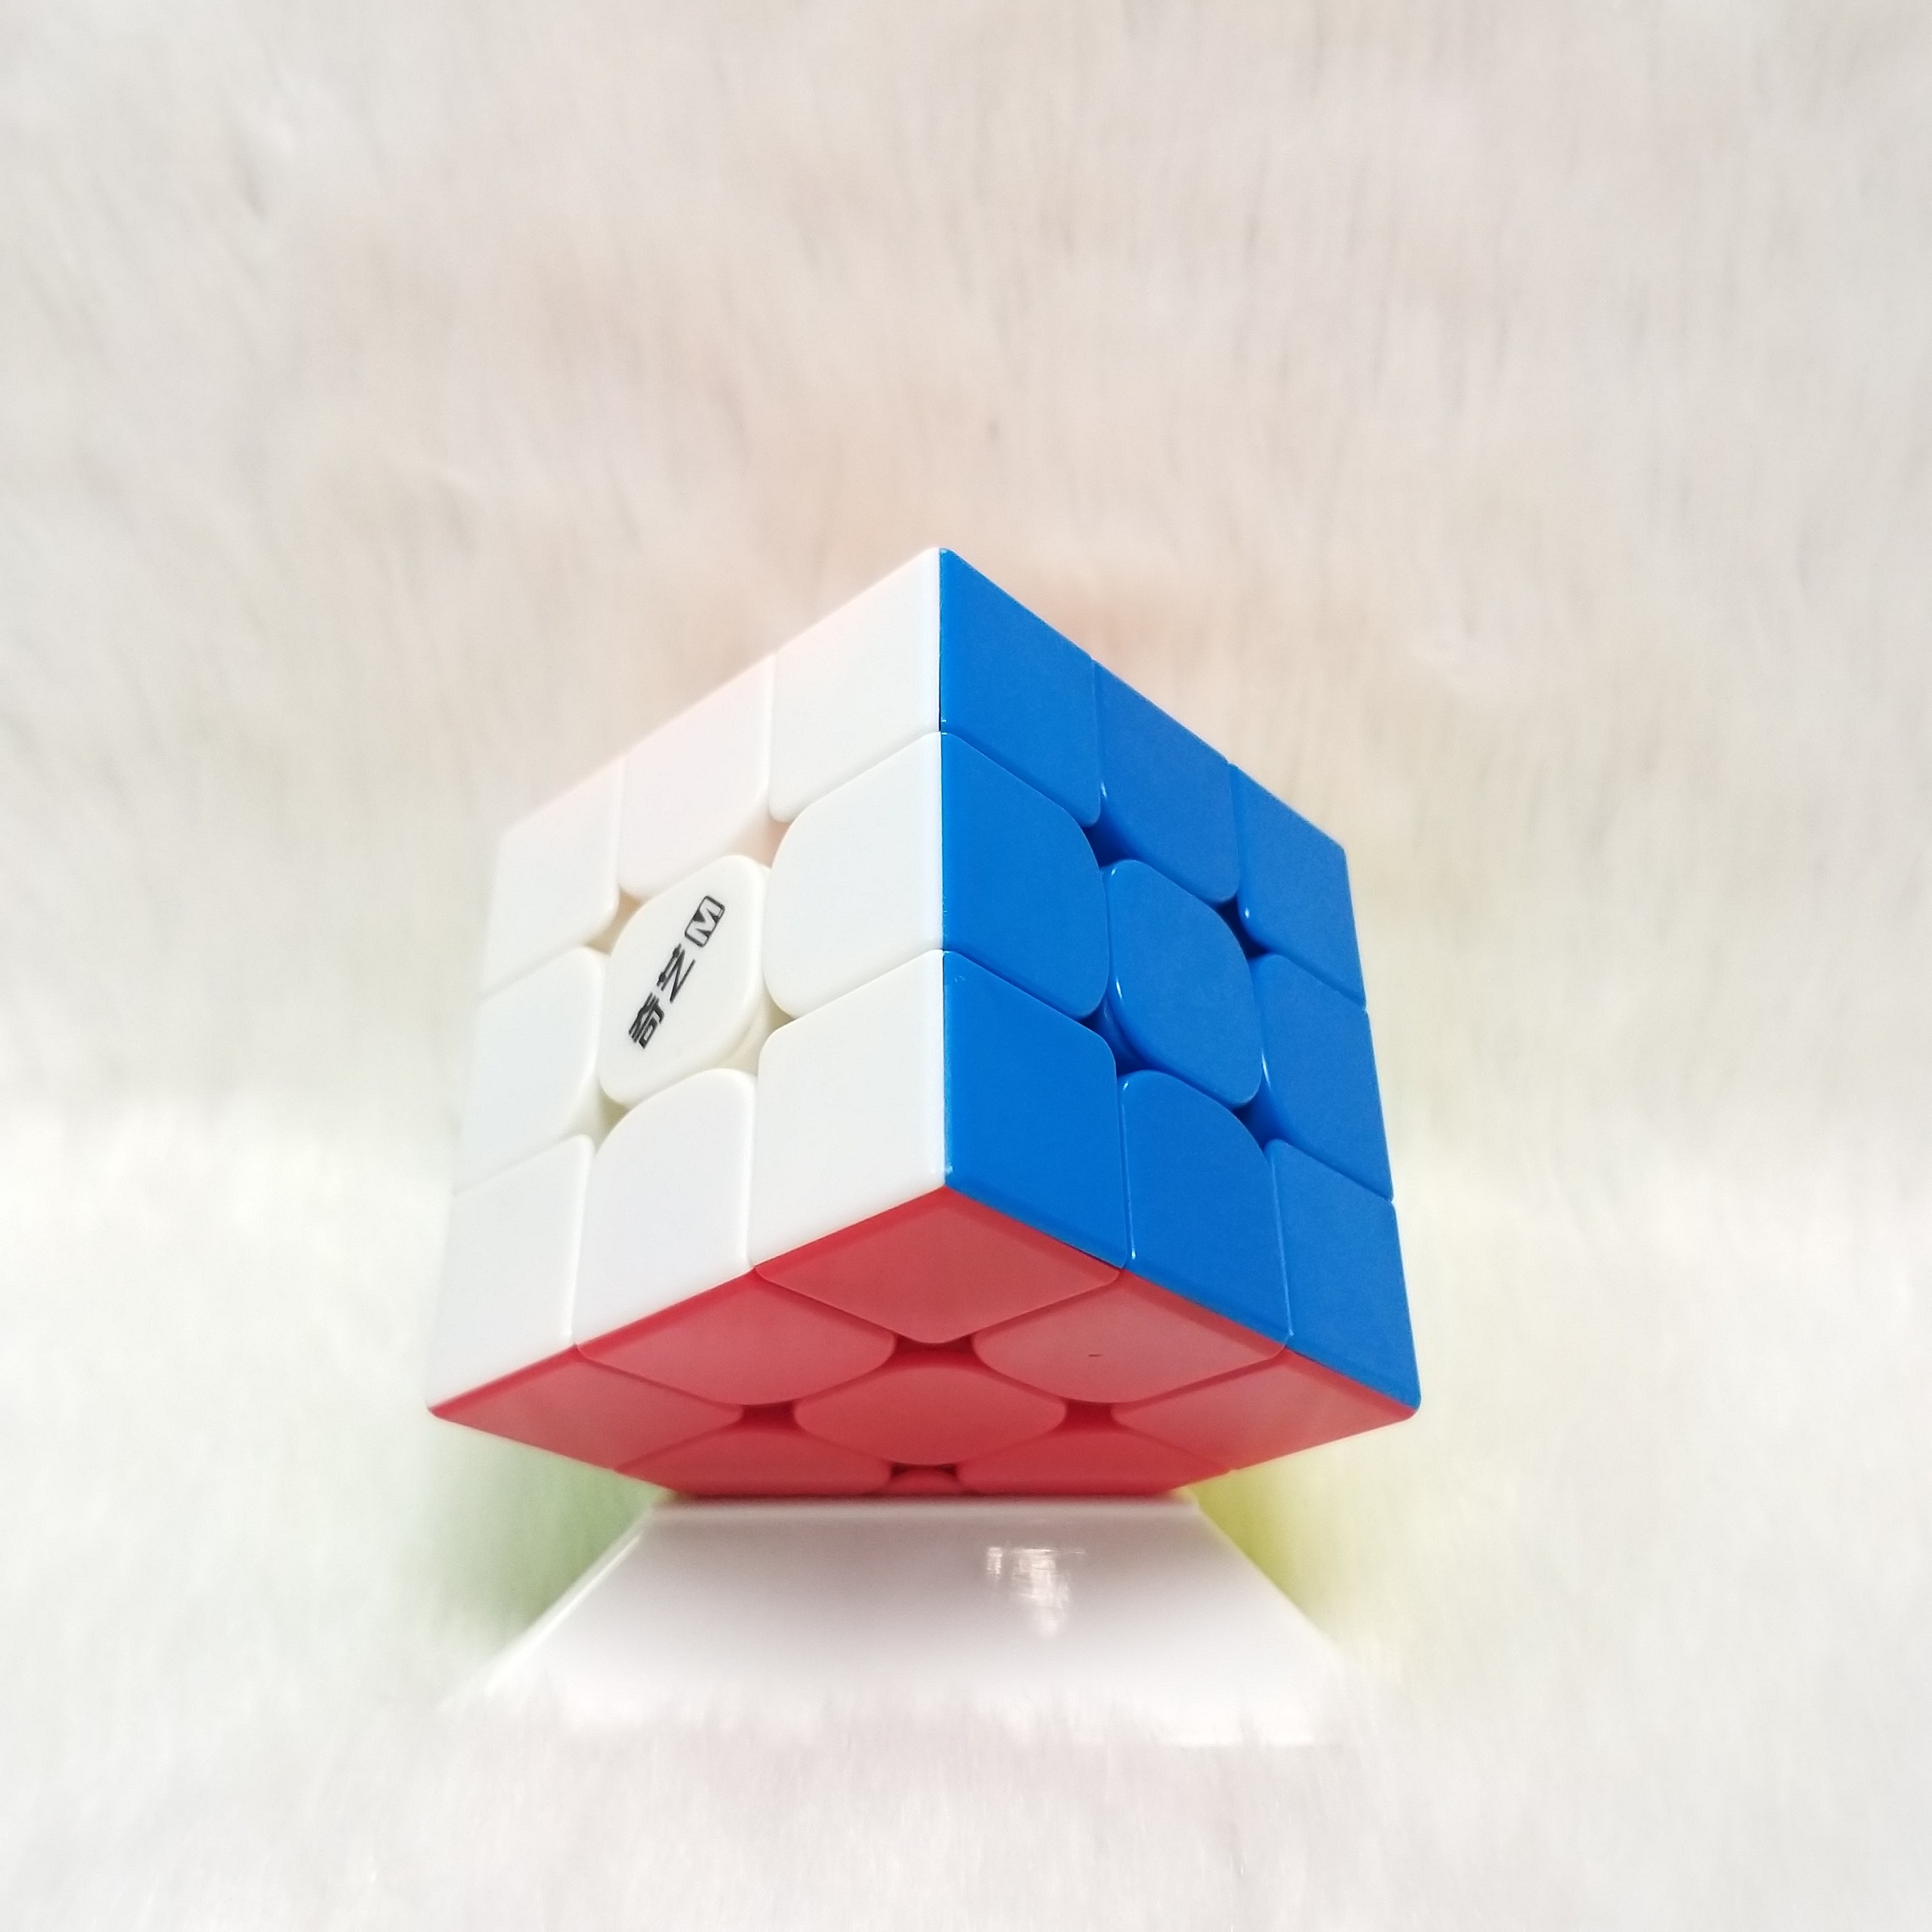 Rubik 3x3 QiYi MS 3x3 Magnetic Stickerless hiệu QiYi (có nam châm)